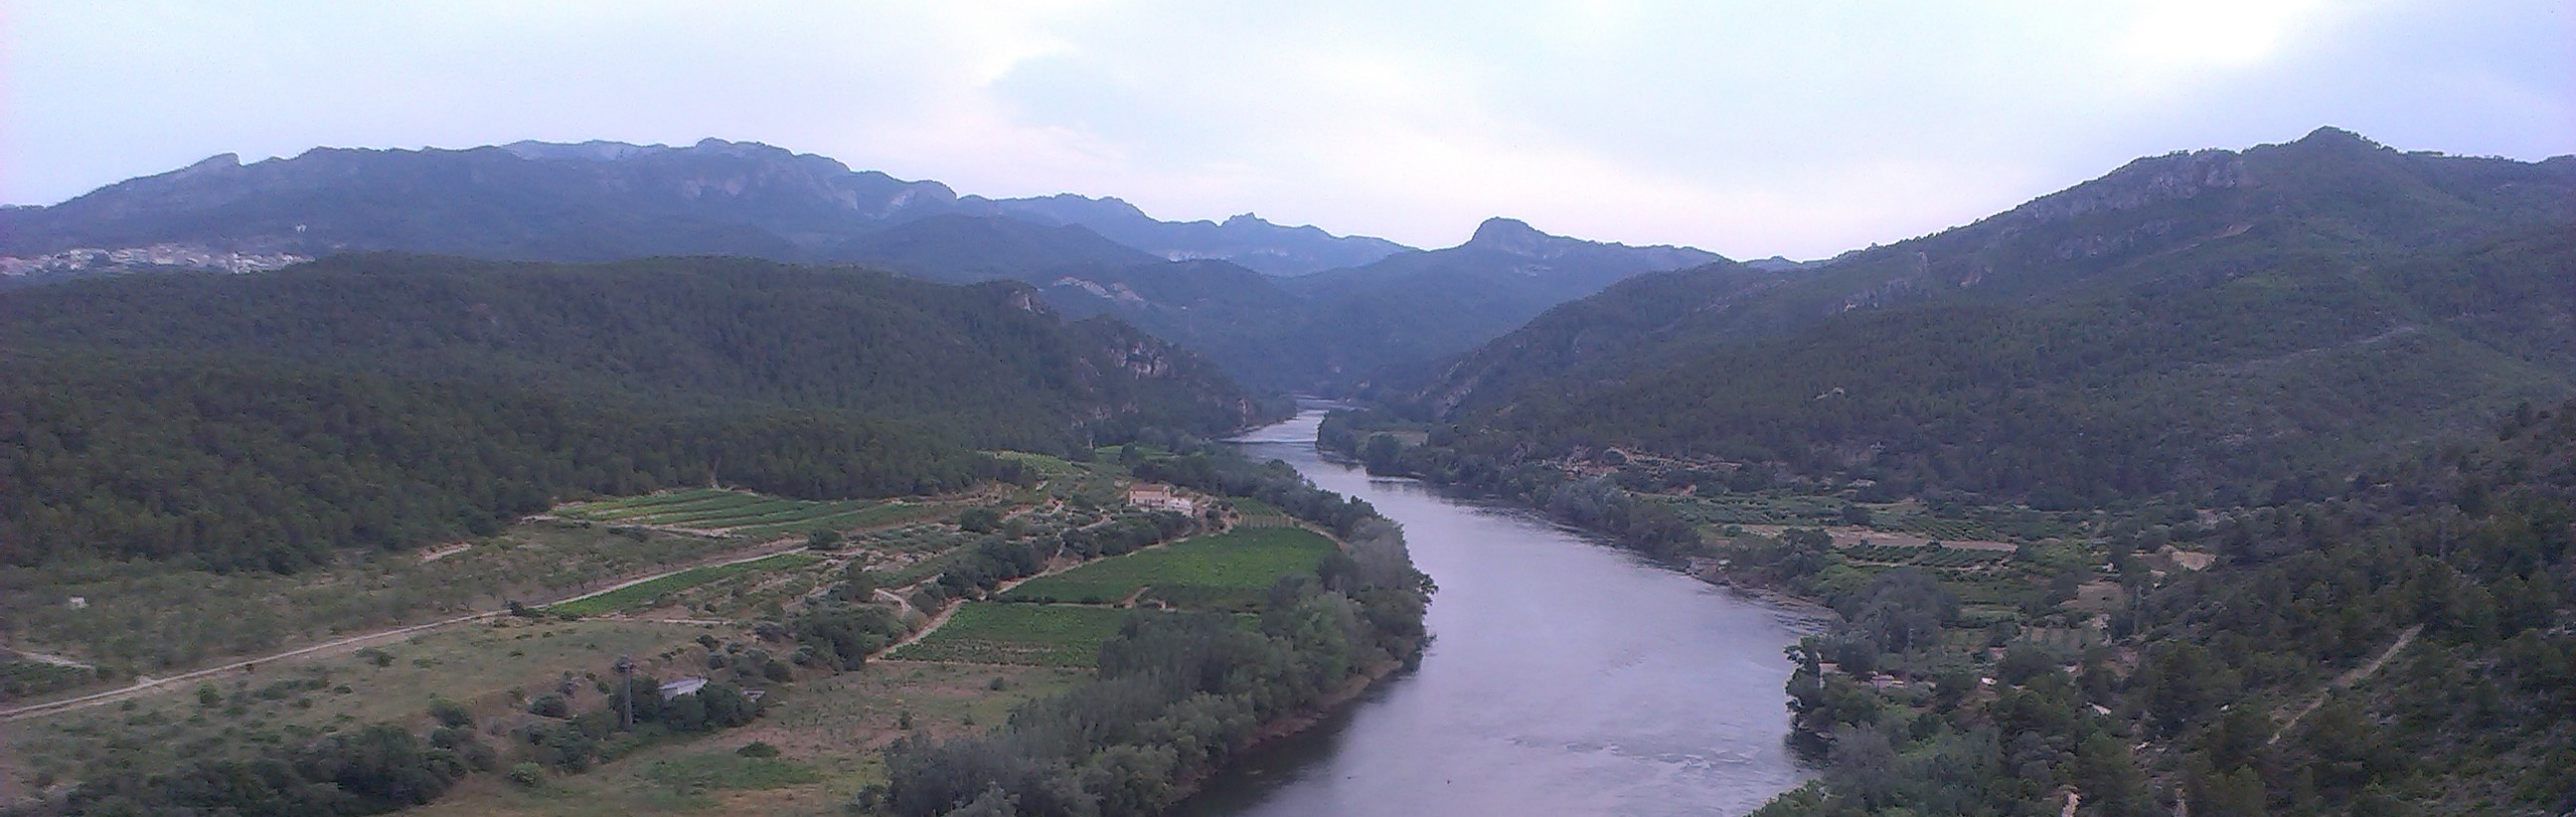 La Confederación Hidrográfica del Ebro firma un protocolo con el Centro Nacional de Información Geográfica (CNIG)